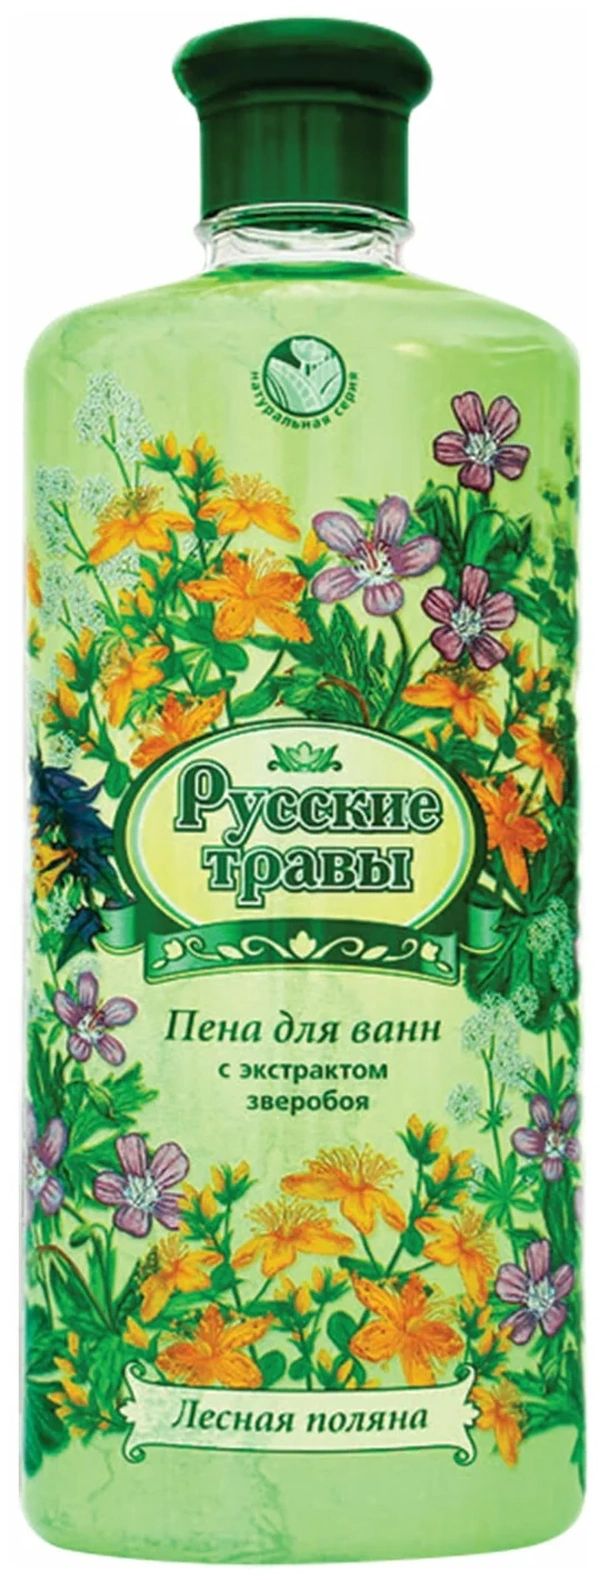 Пена для ванн Русские травы Лесная поляна 500 мл русские травы пена для ванн лесная поляна 500